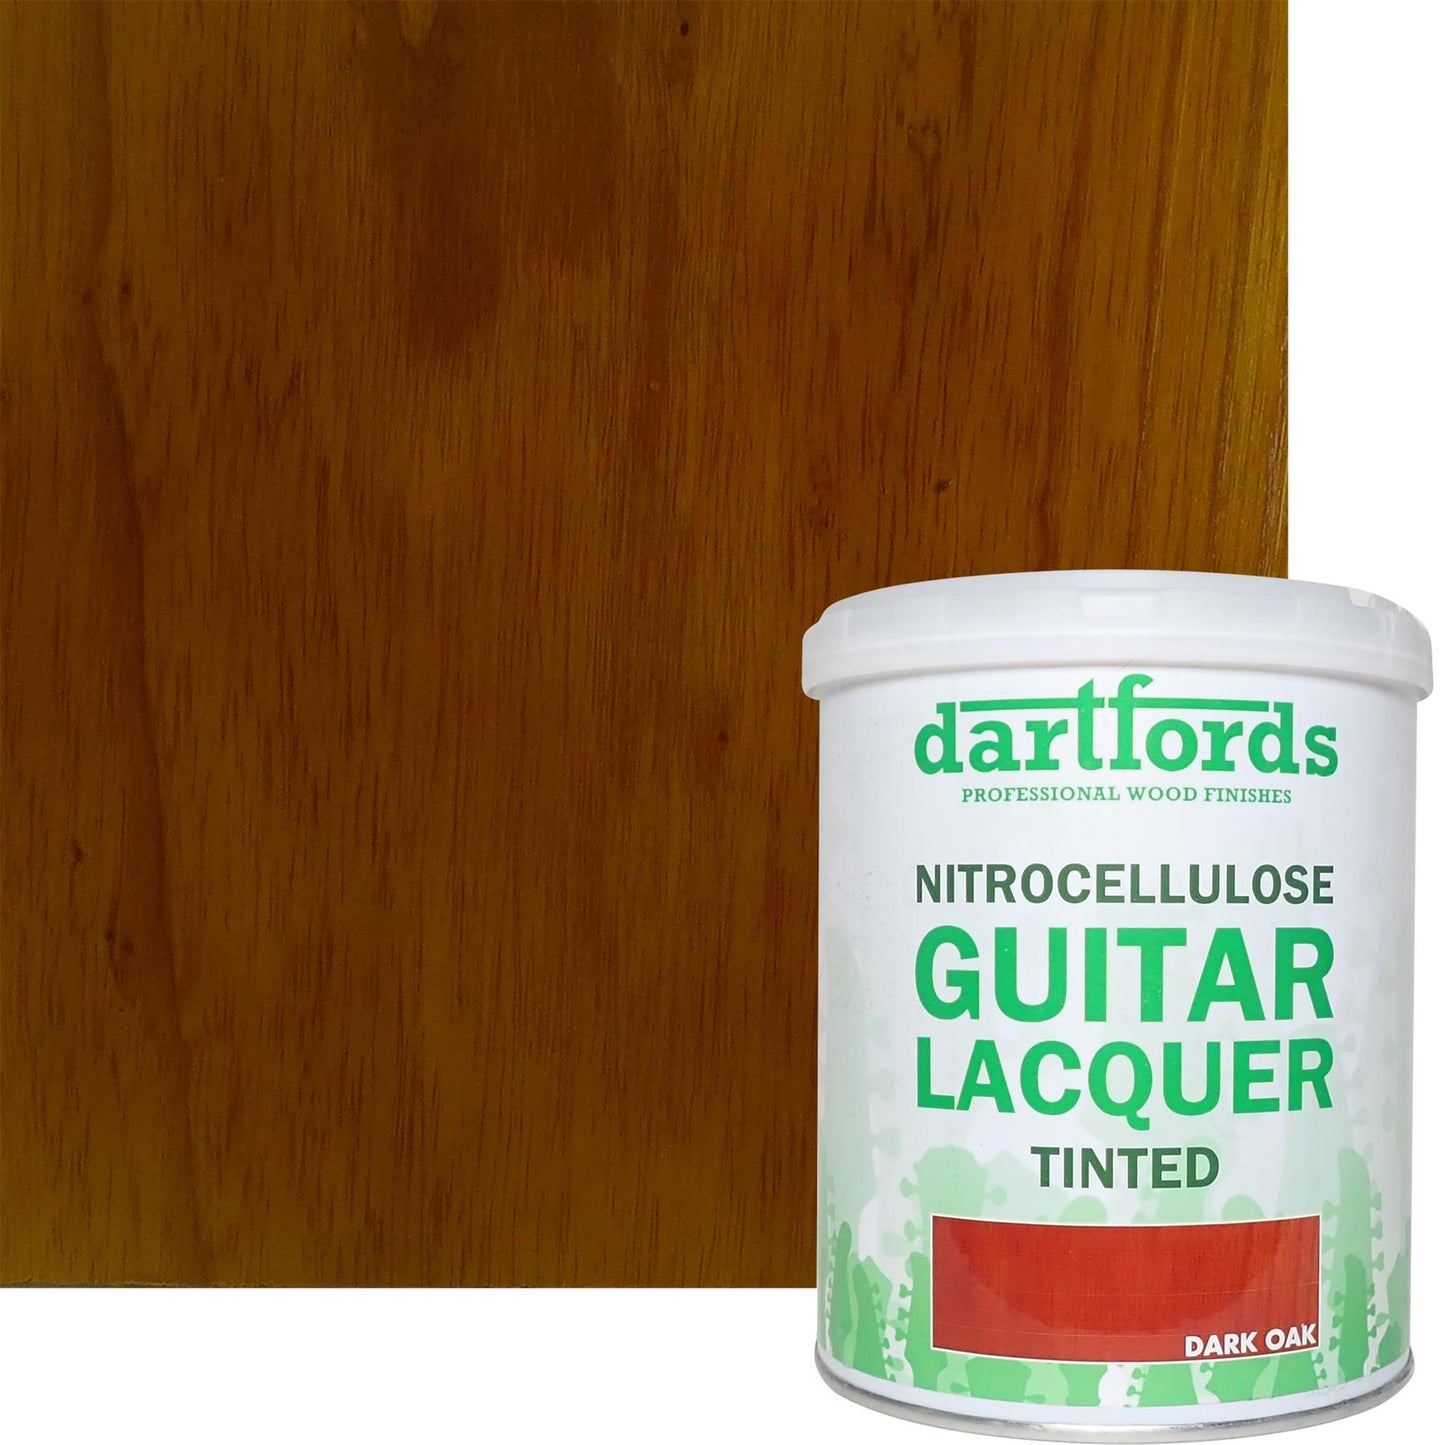 dartfords Dark Oak Nitrocellulose Guitar Lacquer - 1 litre Tin